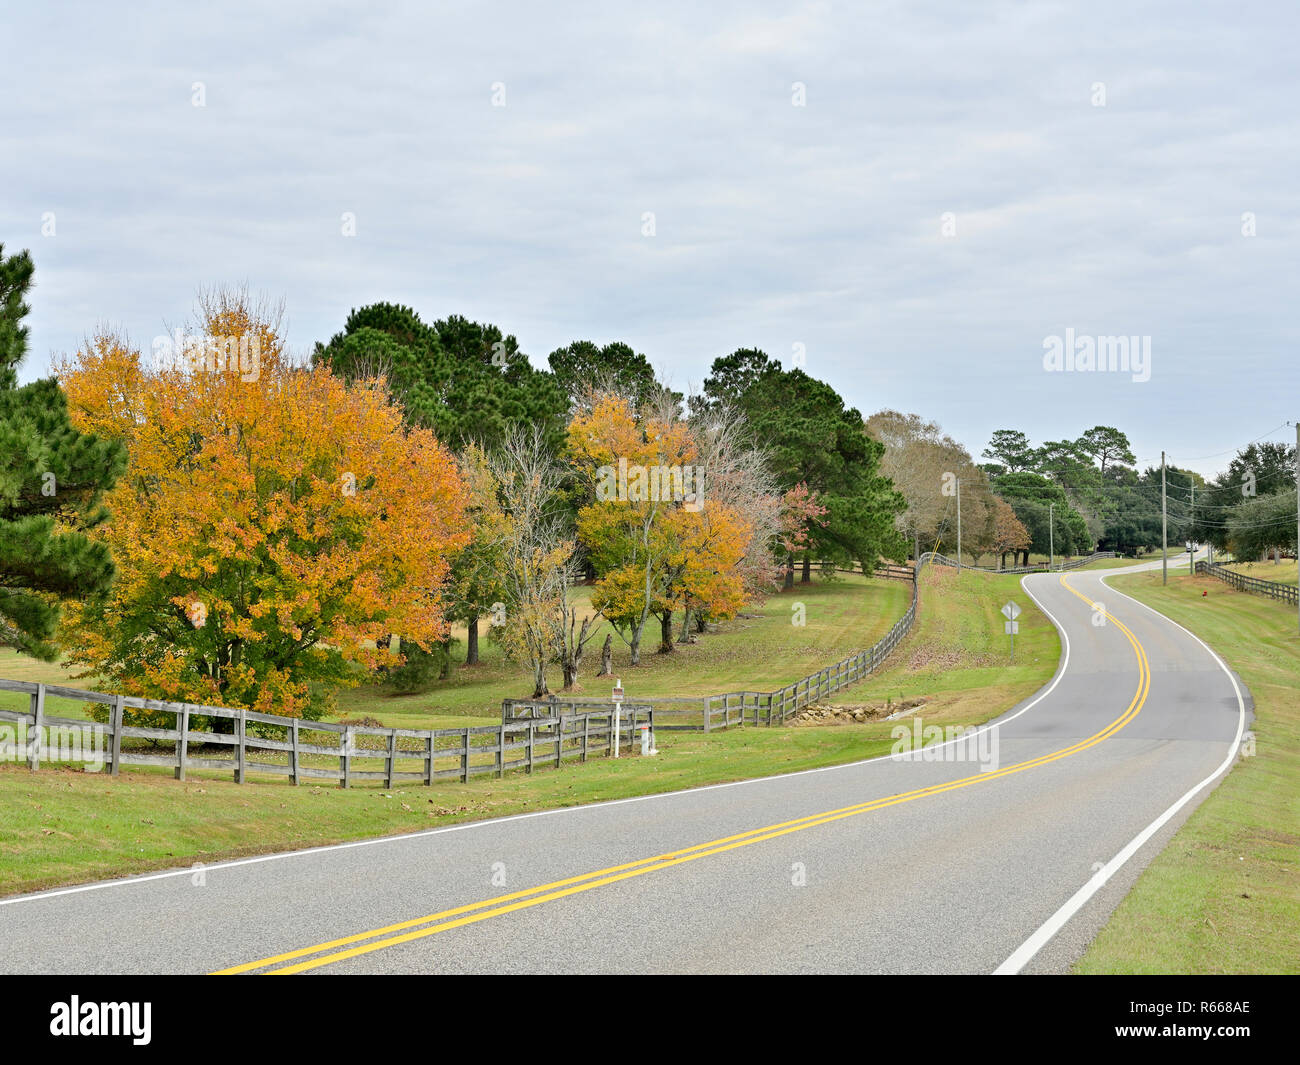 Route de campagne sinueuse calme ou avec une voie ferroviaire de split clôture et arbres en changeant de couleur à l'automne dans la région de South Alabama, USA. Banque D'Images